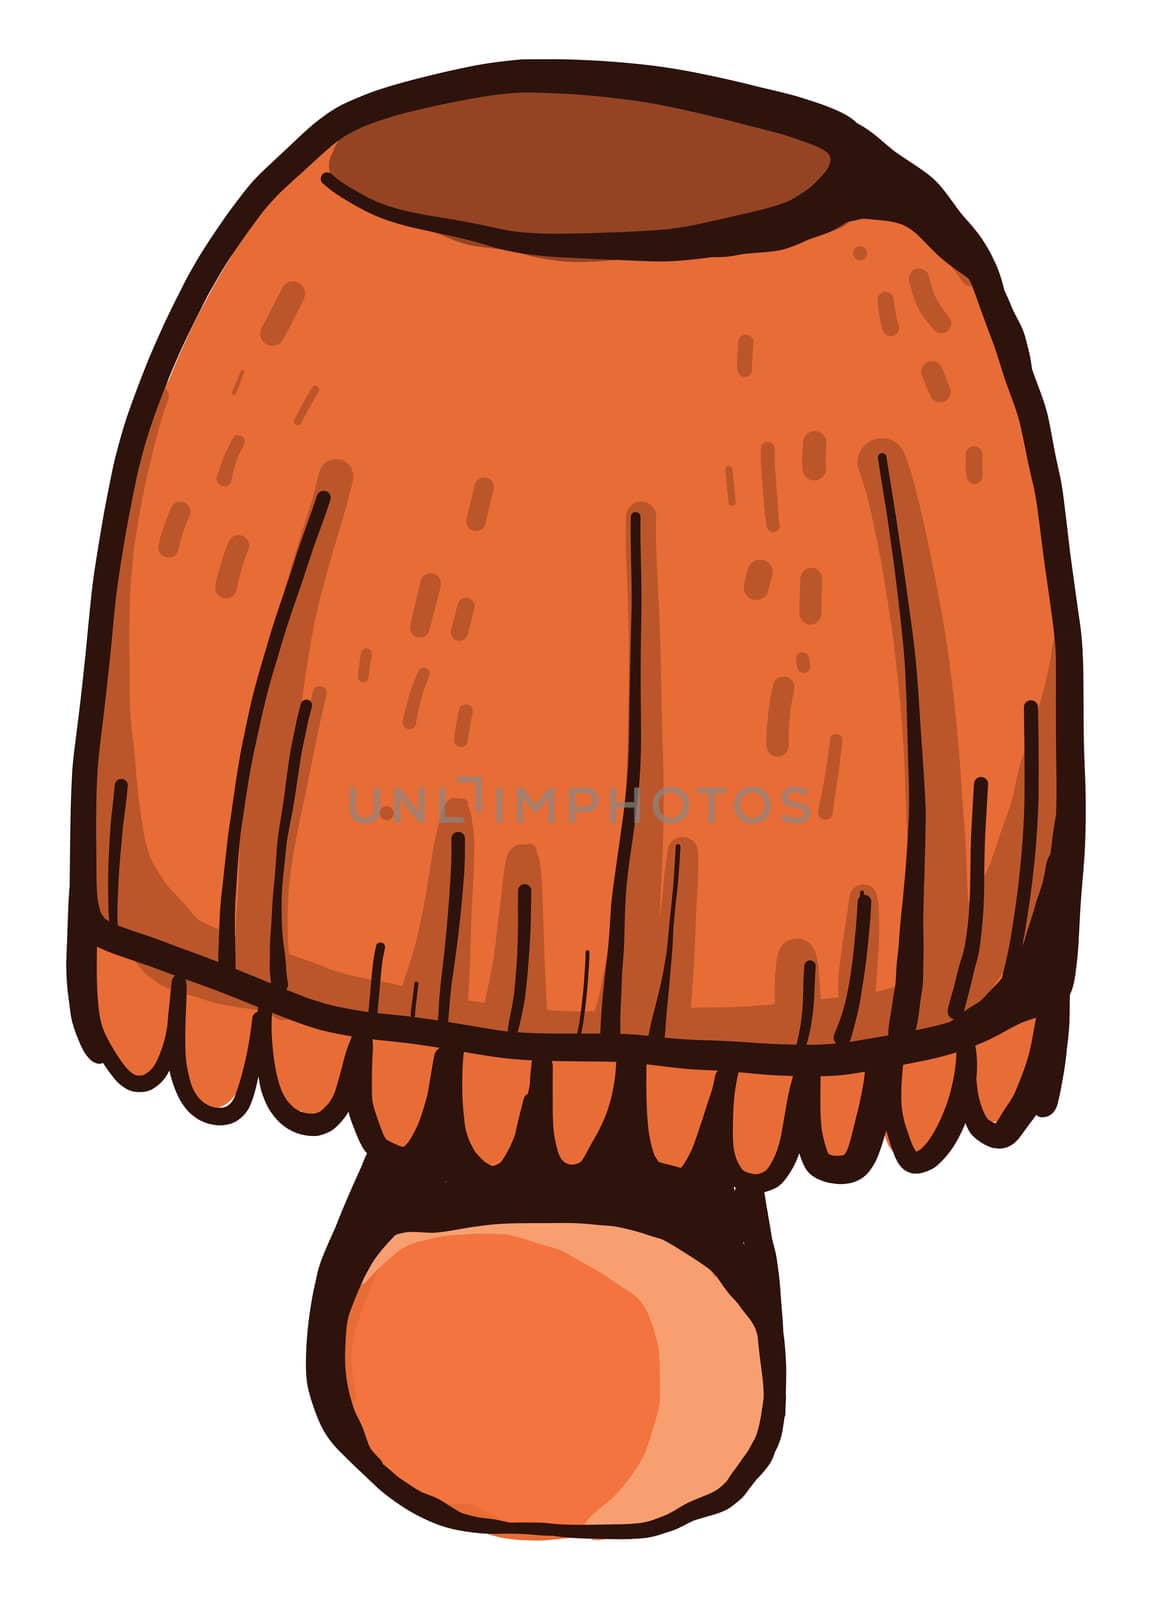 Orange table lamp , illustration, vector on white background by Morphart